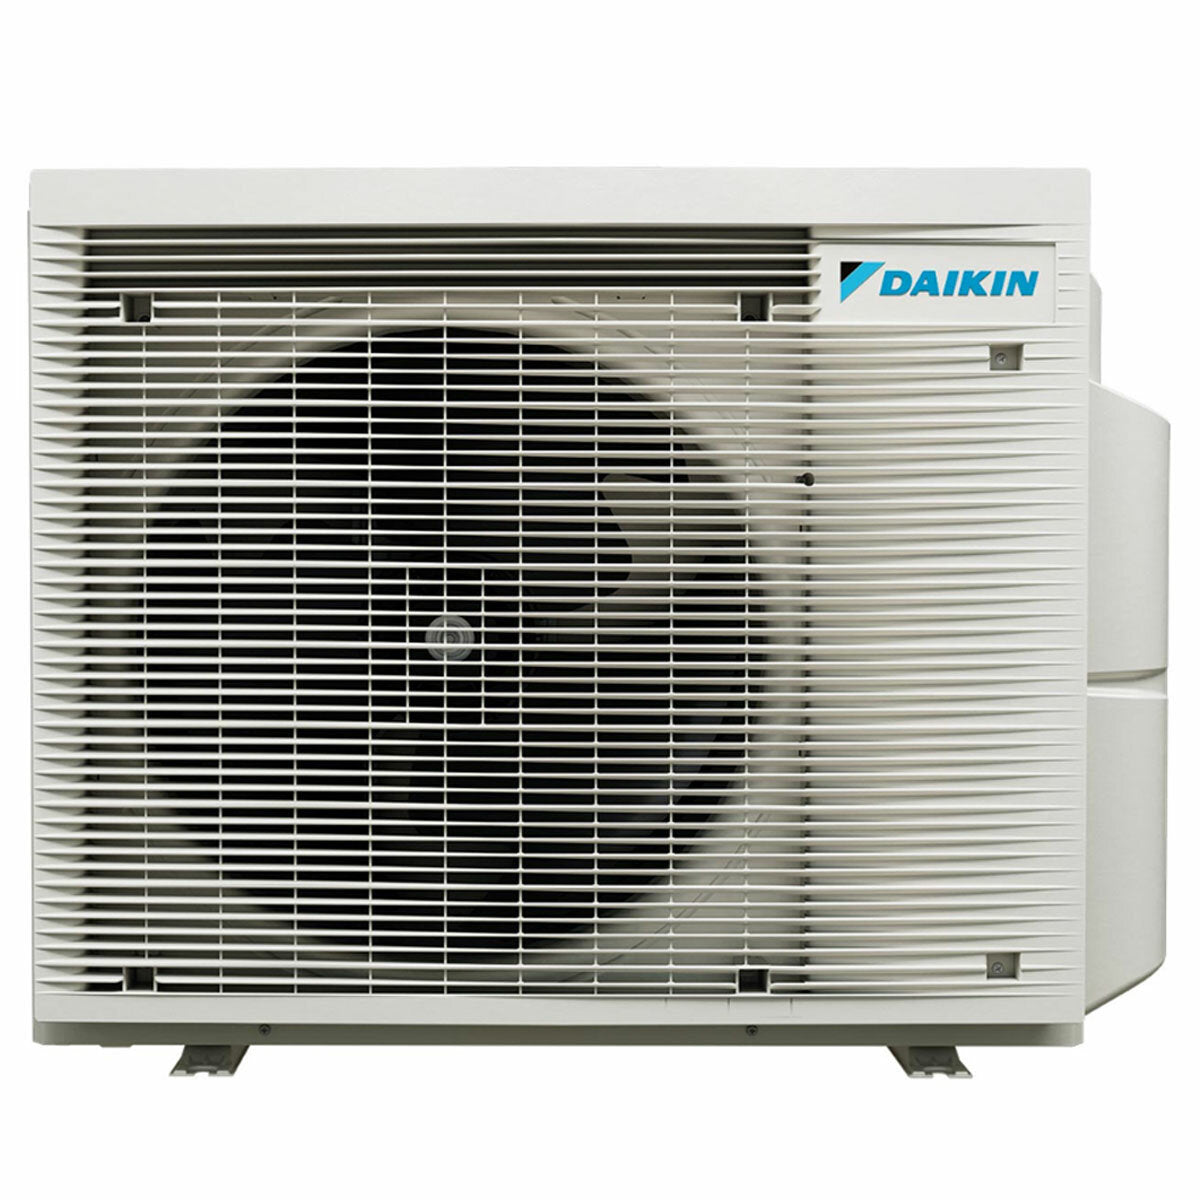 Daikin Stylish Trial Split Klimaanlage 5000 + 7000 + 18000 BTU Inverter A++ WLAN Außengerät 6,8 kW